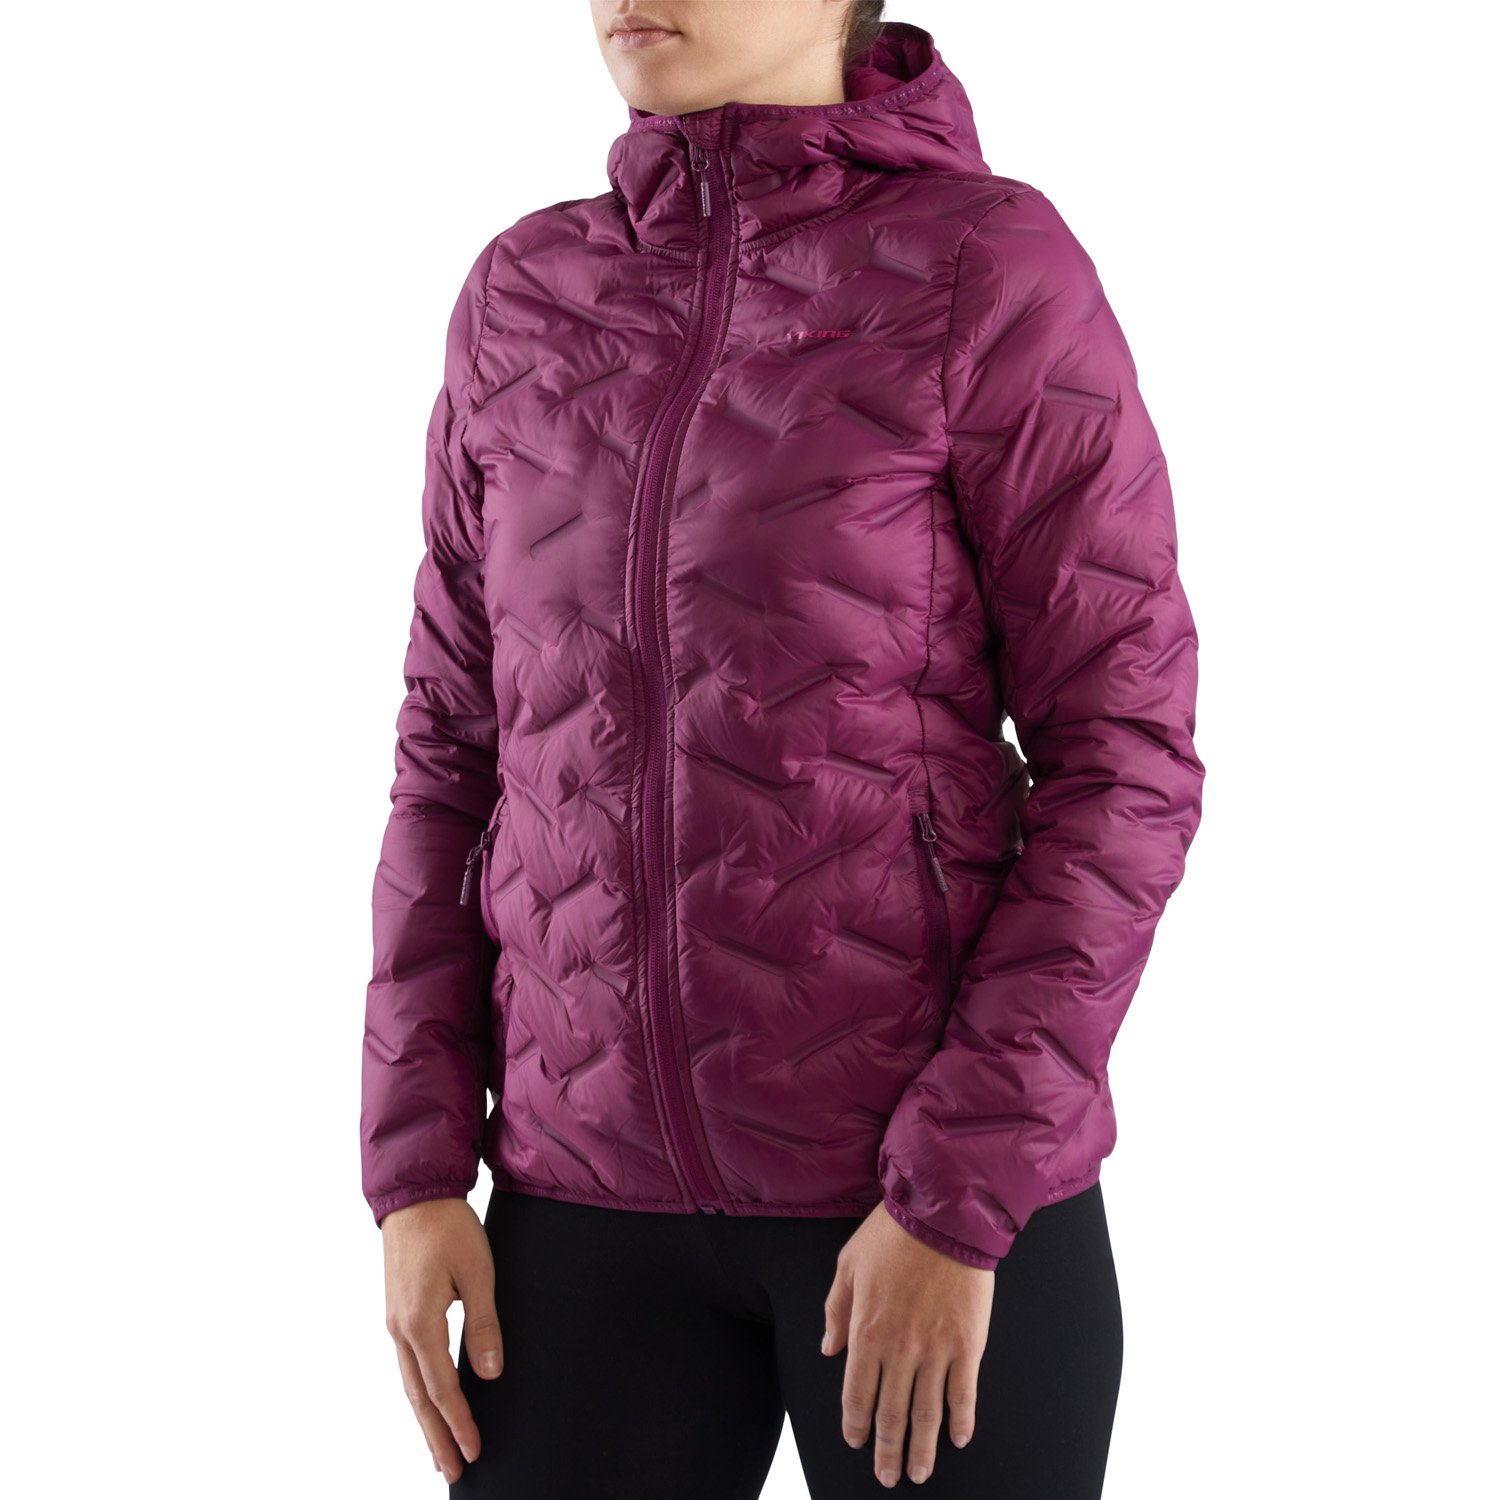 Куртка VIKING Aspen Lady Festival Fuchsia, для активного отдыха, женская, фиолетовая, 750/23/8818_0046 мяч футбольный для отдыха start up e5120 р 5 белый